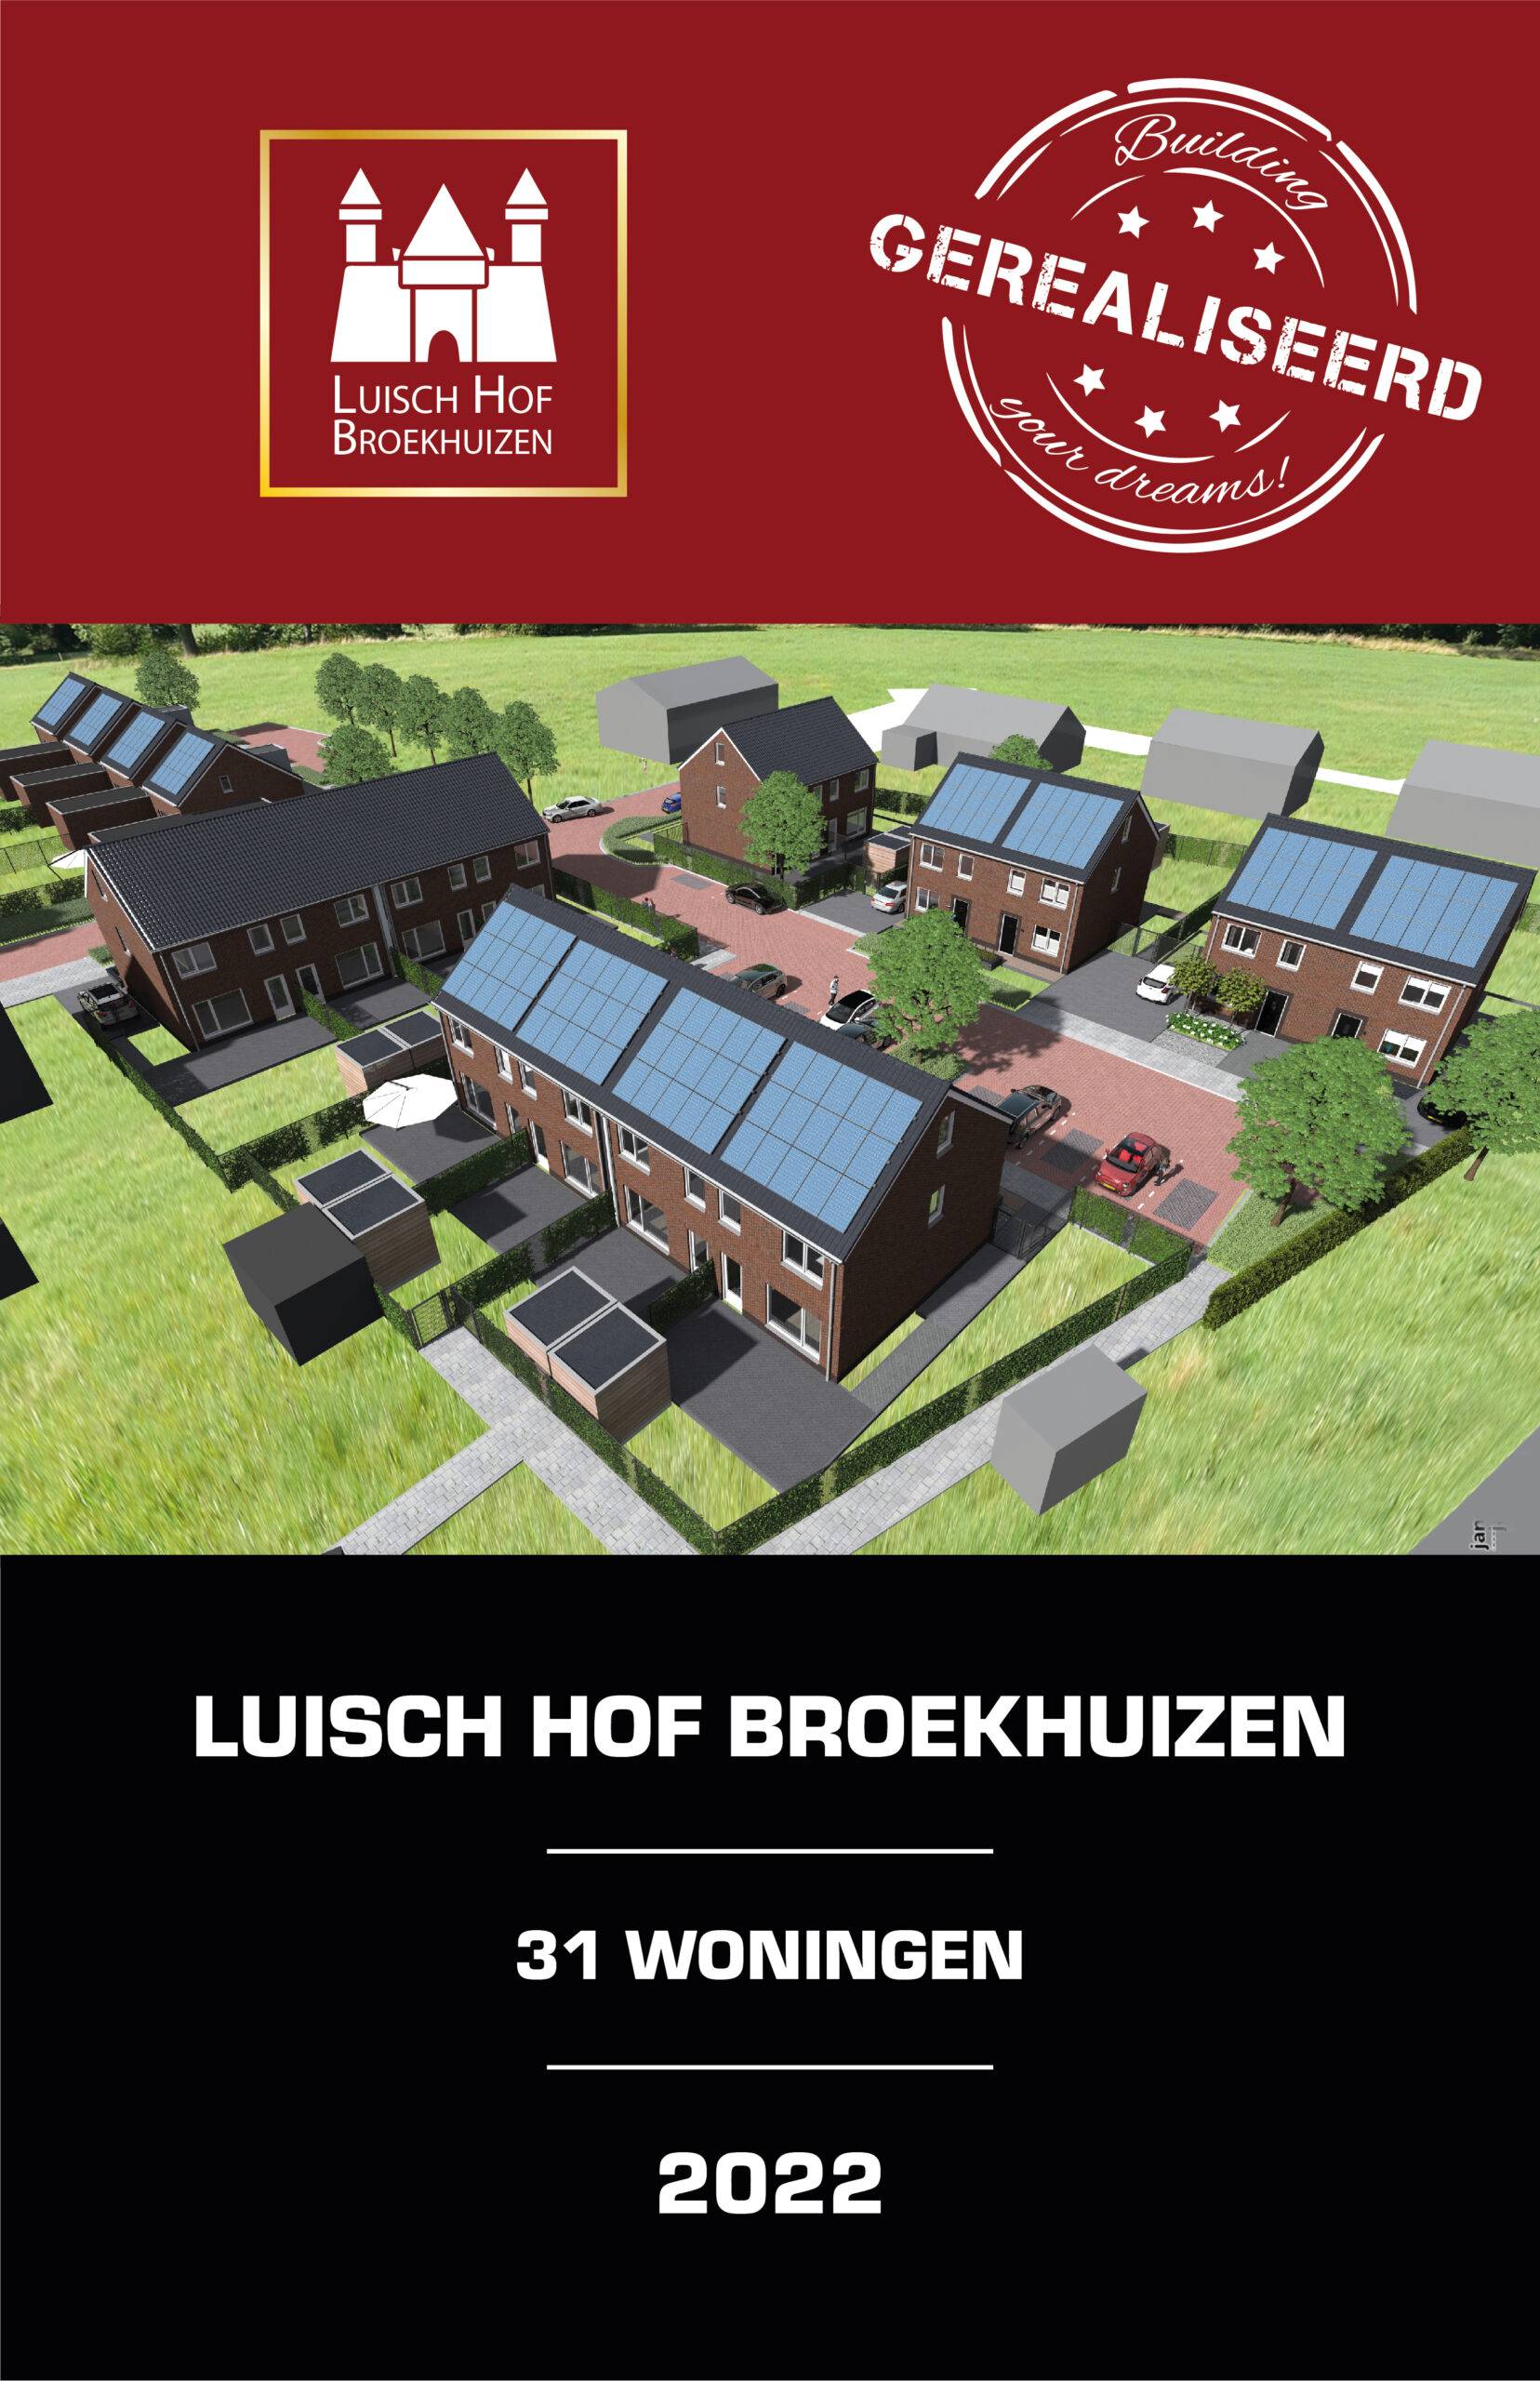 gerealiseerd display Luisch hof Broekhuizen fase 1_16x9